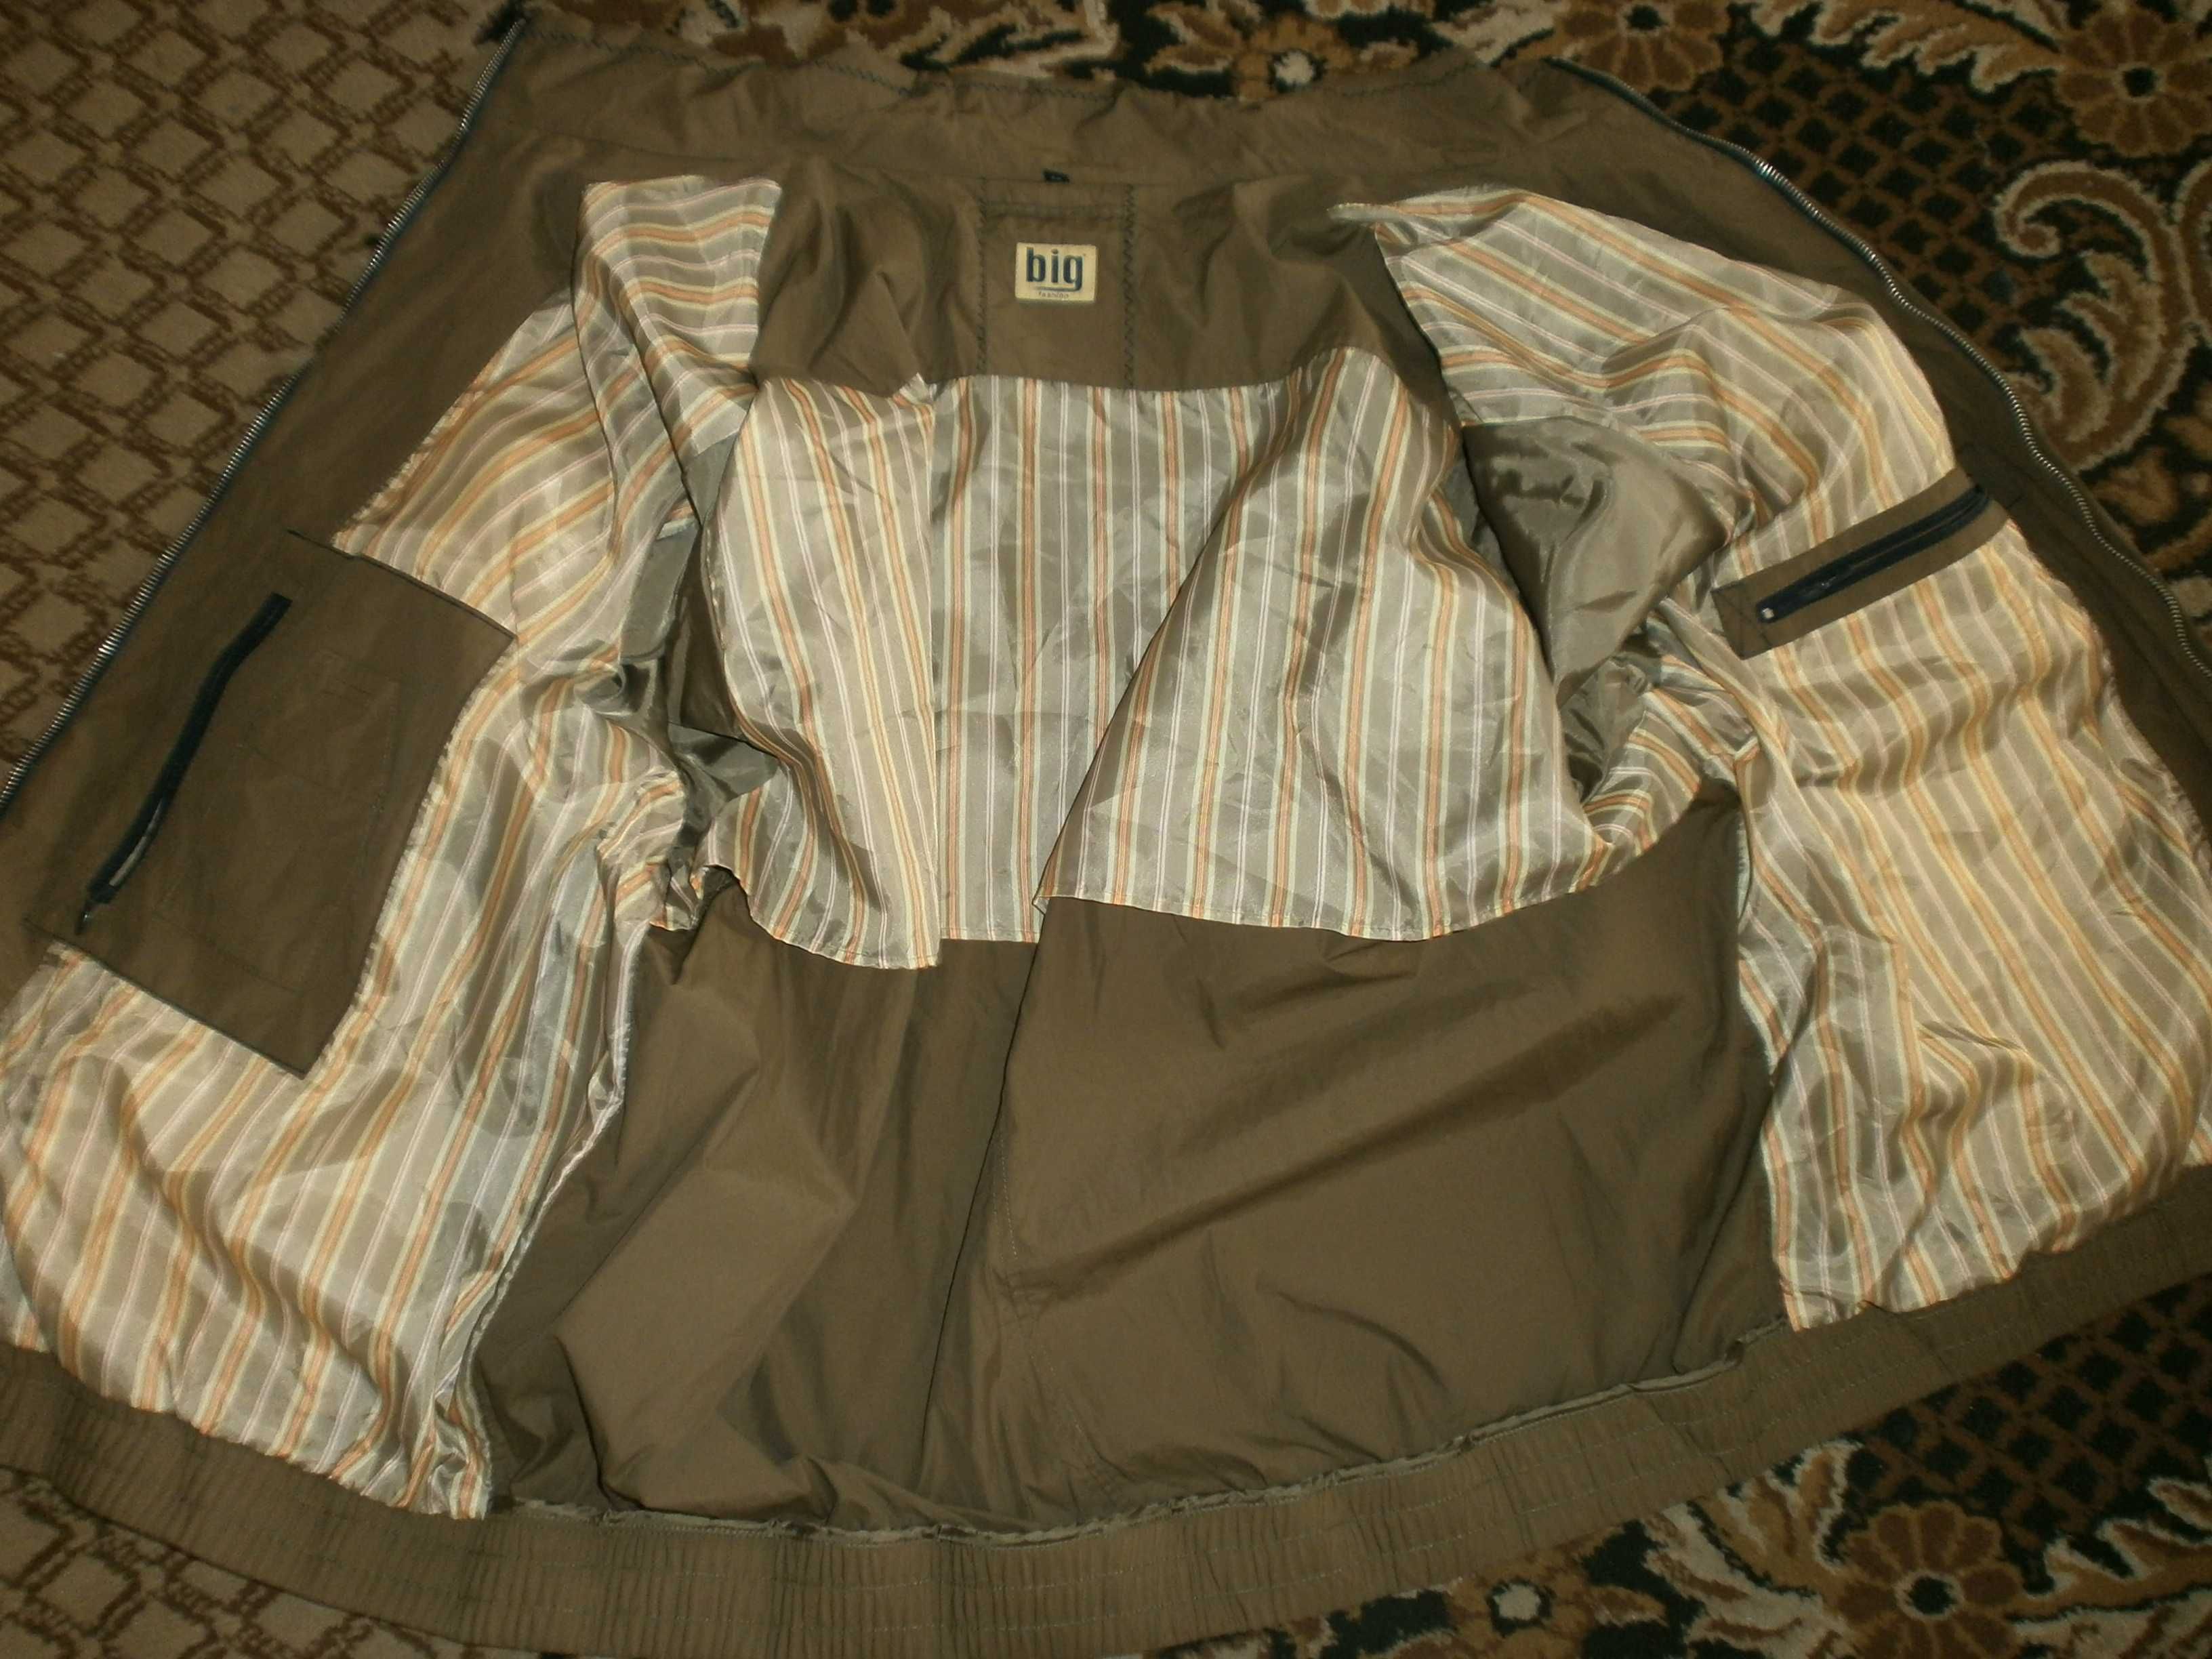 Большой размер. Куртка ветровка N-Exp, олива, р. 5XL, наш 68.ПОГ-79 см